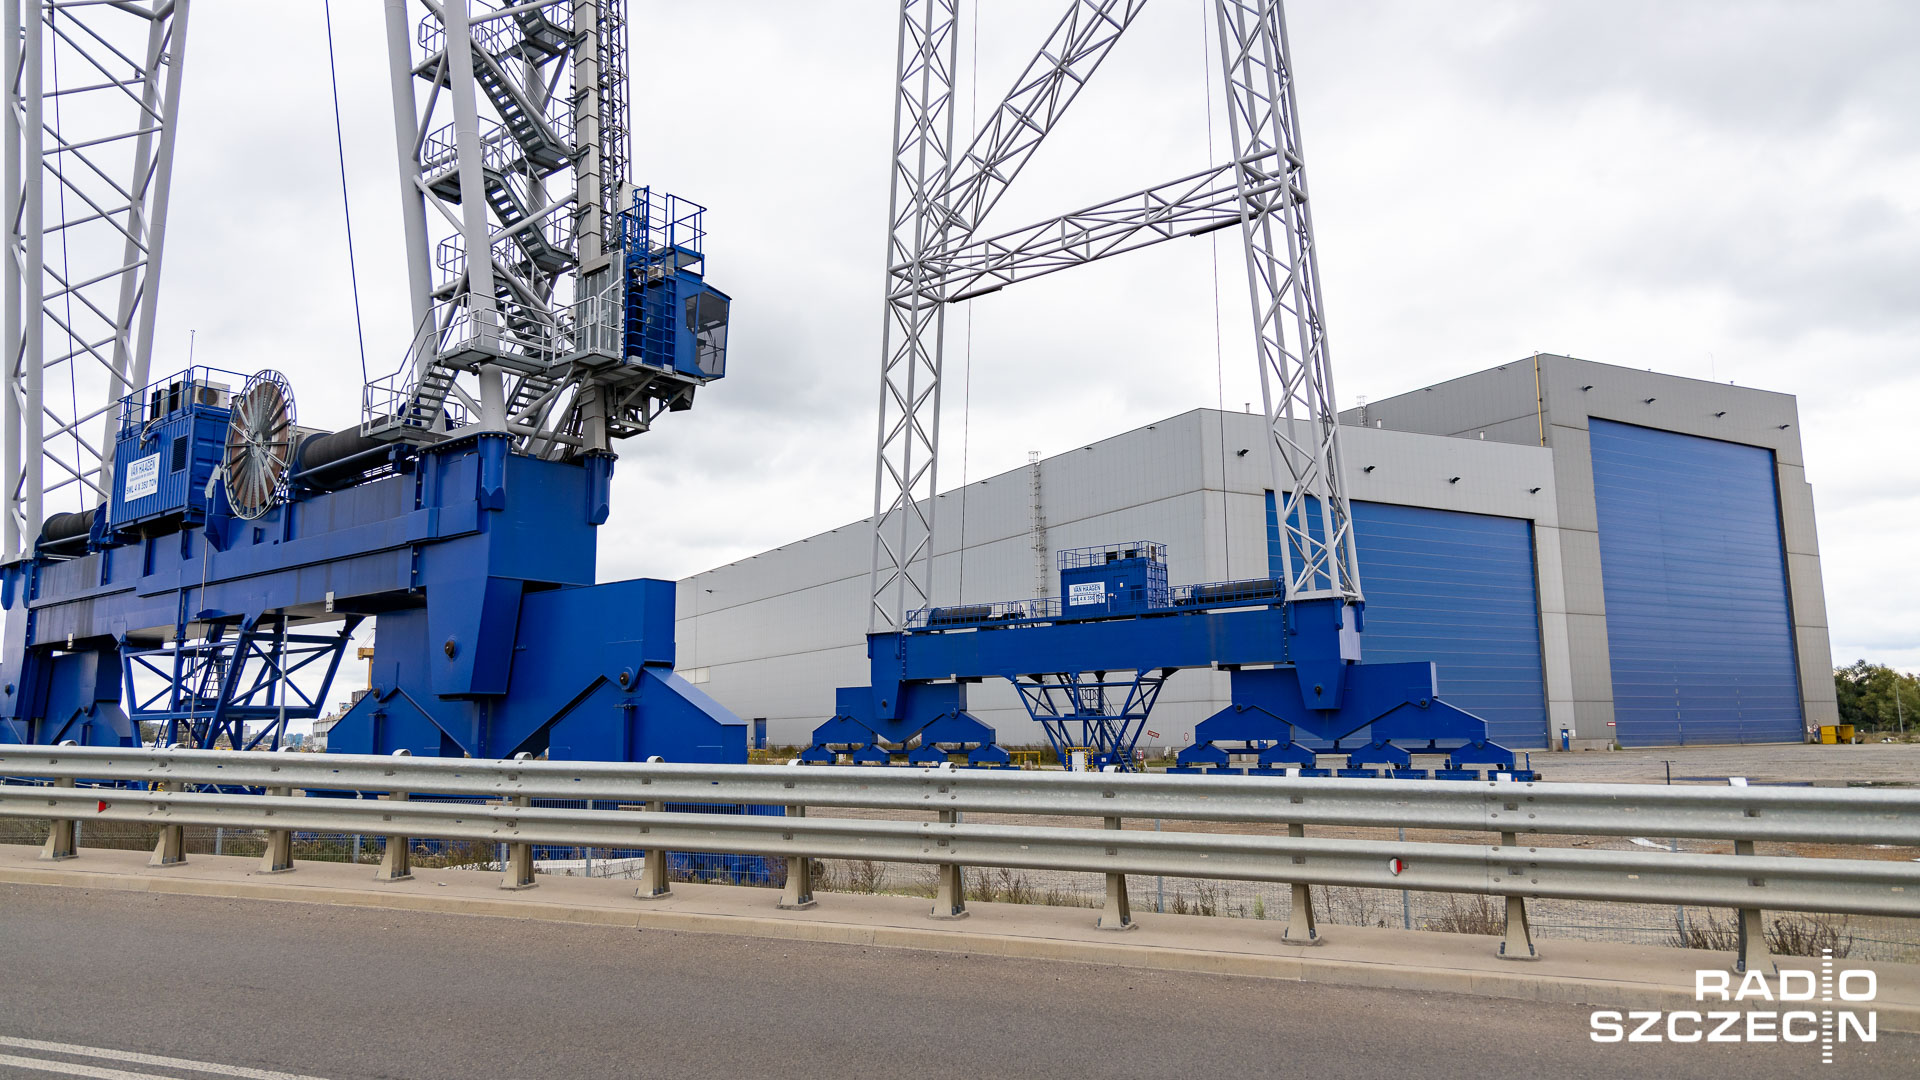 Duński producent turbin wiatrowych firma Vestas kupiła fabrykę ST3 Offshore na Ostrowie Brdowskim.